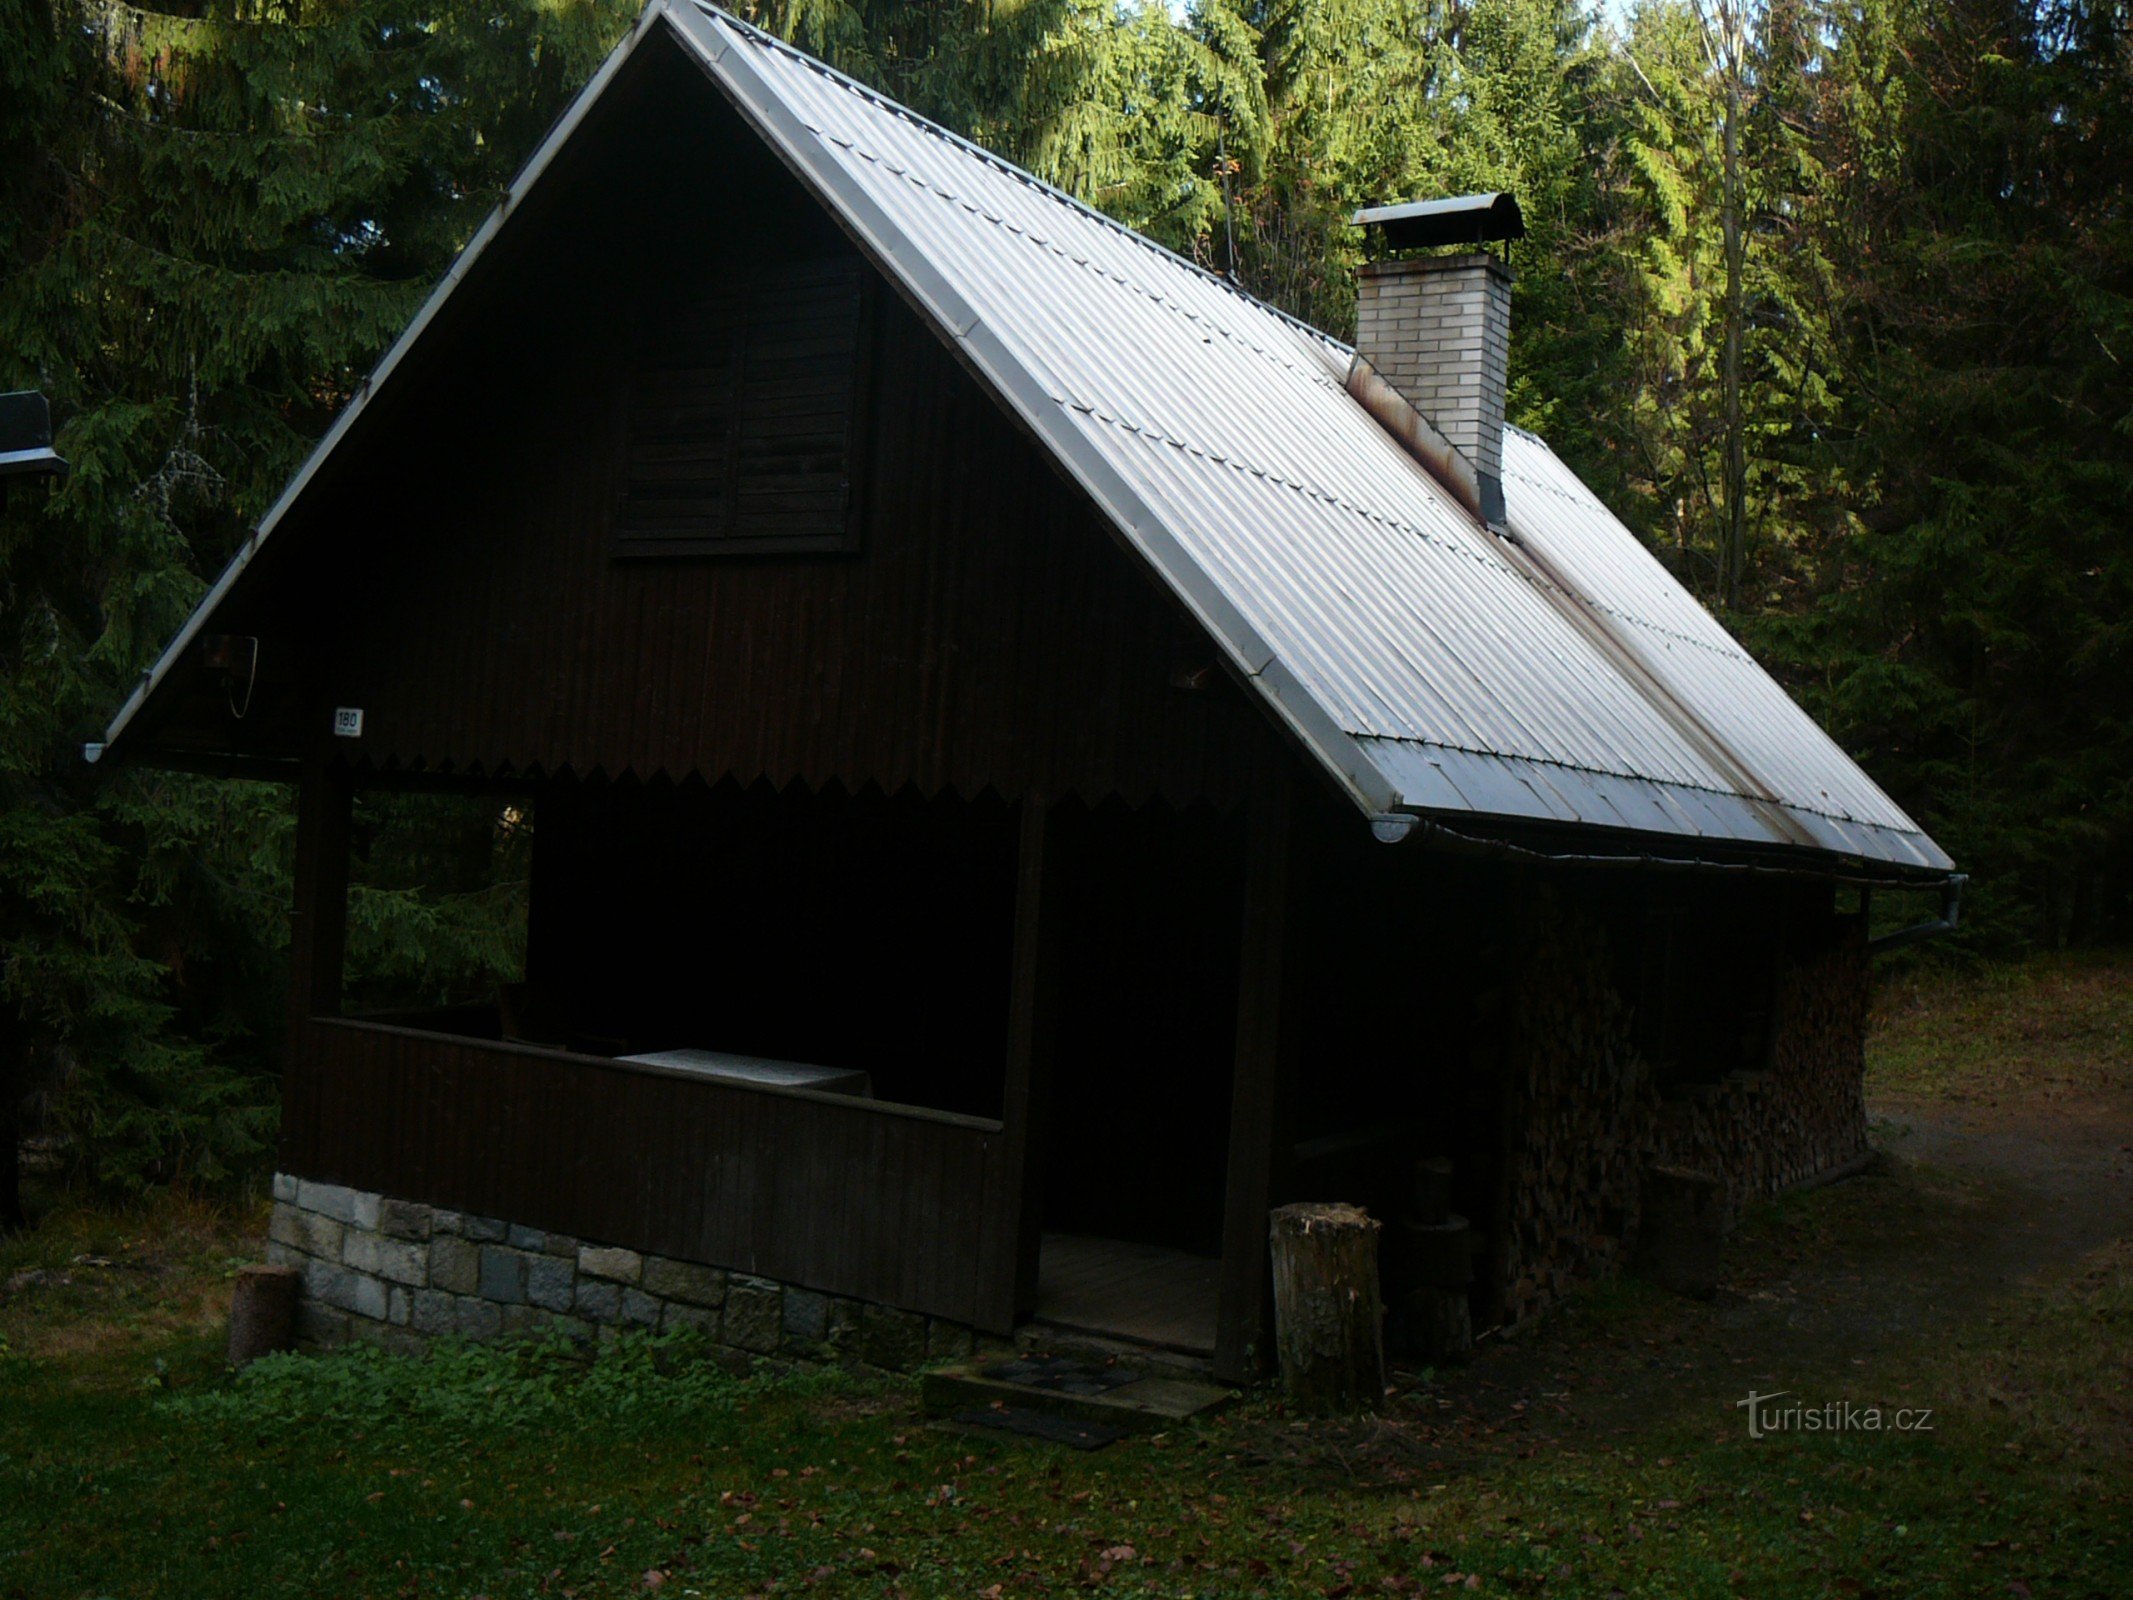 Faldyn's cabin